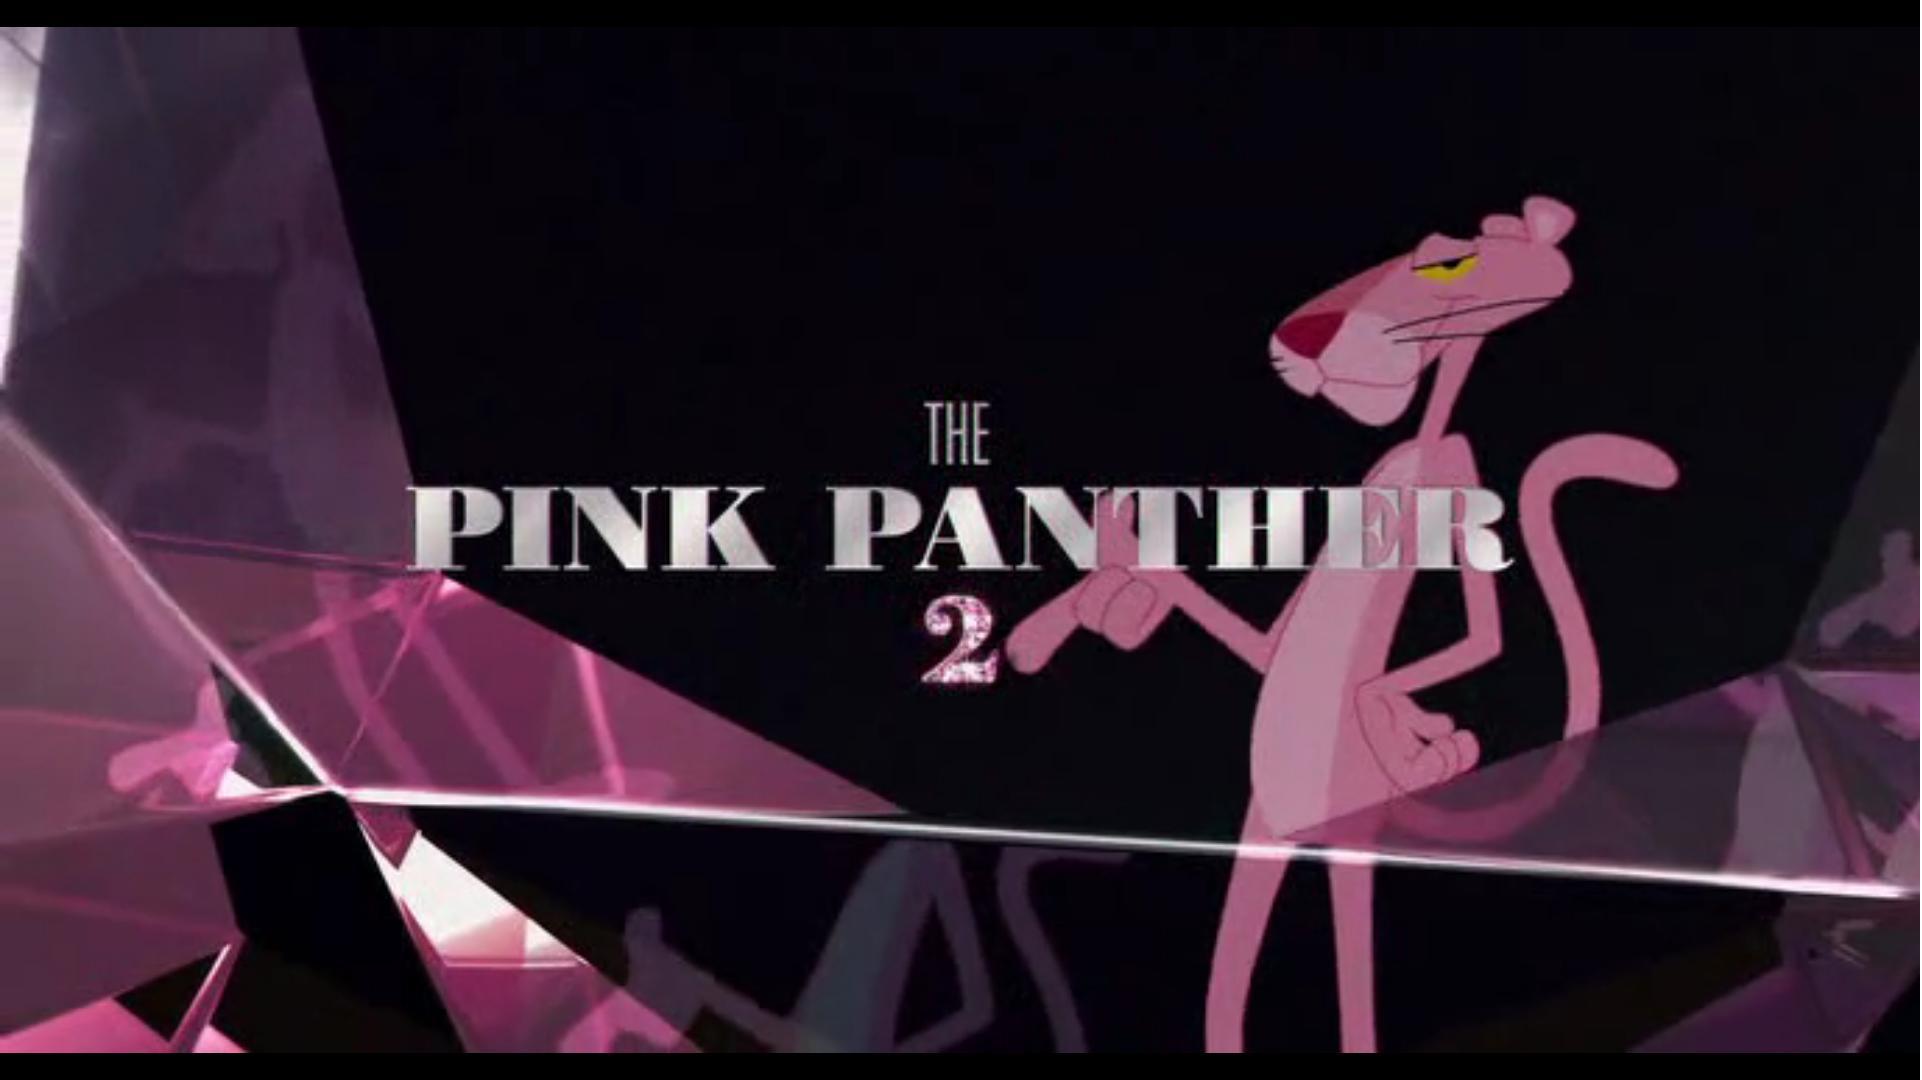 เรียนรู้ มากกว่า 98 pink panther wallpaper แนวนอน ดีที่สุด -  